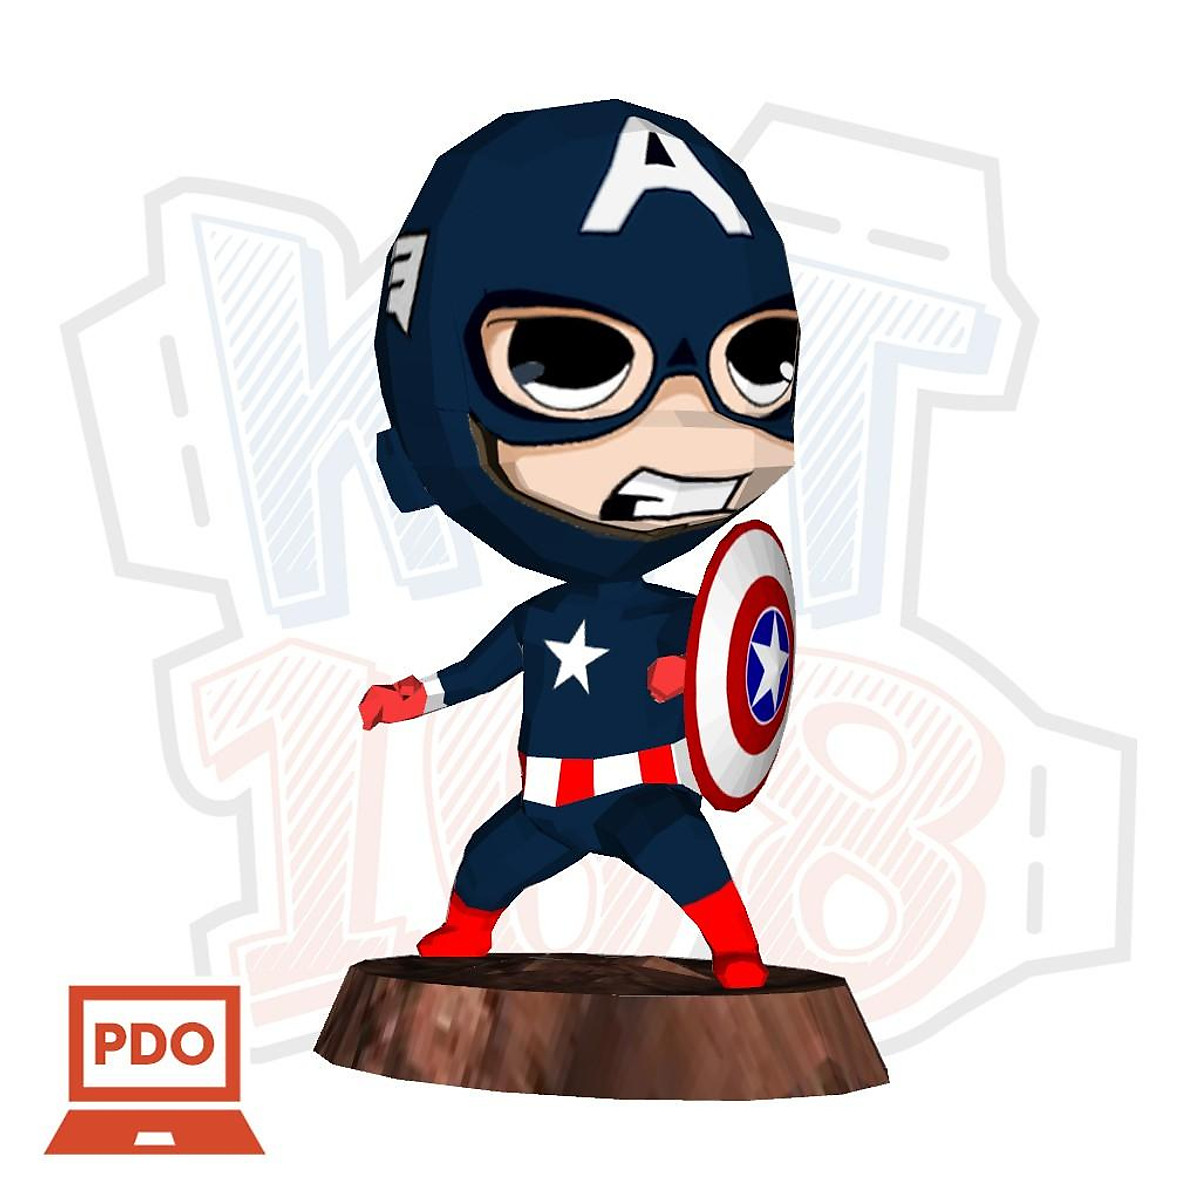 Mô hình giấy Chibi Captain America: Nếu bạn là một người yêu thích siêu anh hùng, bạn sẽ thích mê mẩn mô hình giấy Chibi Captain America. Với chi tiết sắc nét và tính năng đáng yêu, mô hình này sẽ khiến bạn cảm thấy thích thú và có khả năng trở thành món đồ chơi yêu thích của bạn. Hãy xem hình ảnh để tận hưởng vẻ đẹp của siêu anh hùng mà mình yêu thích.